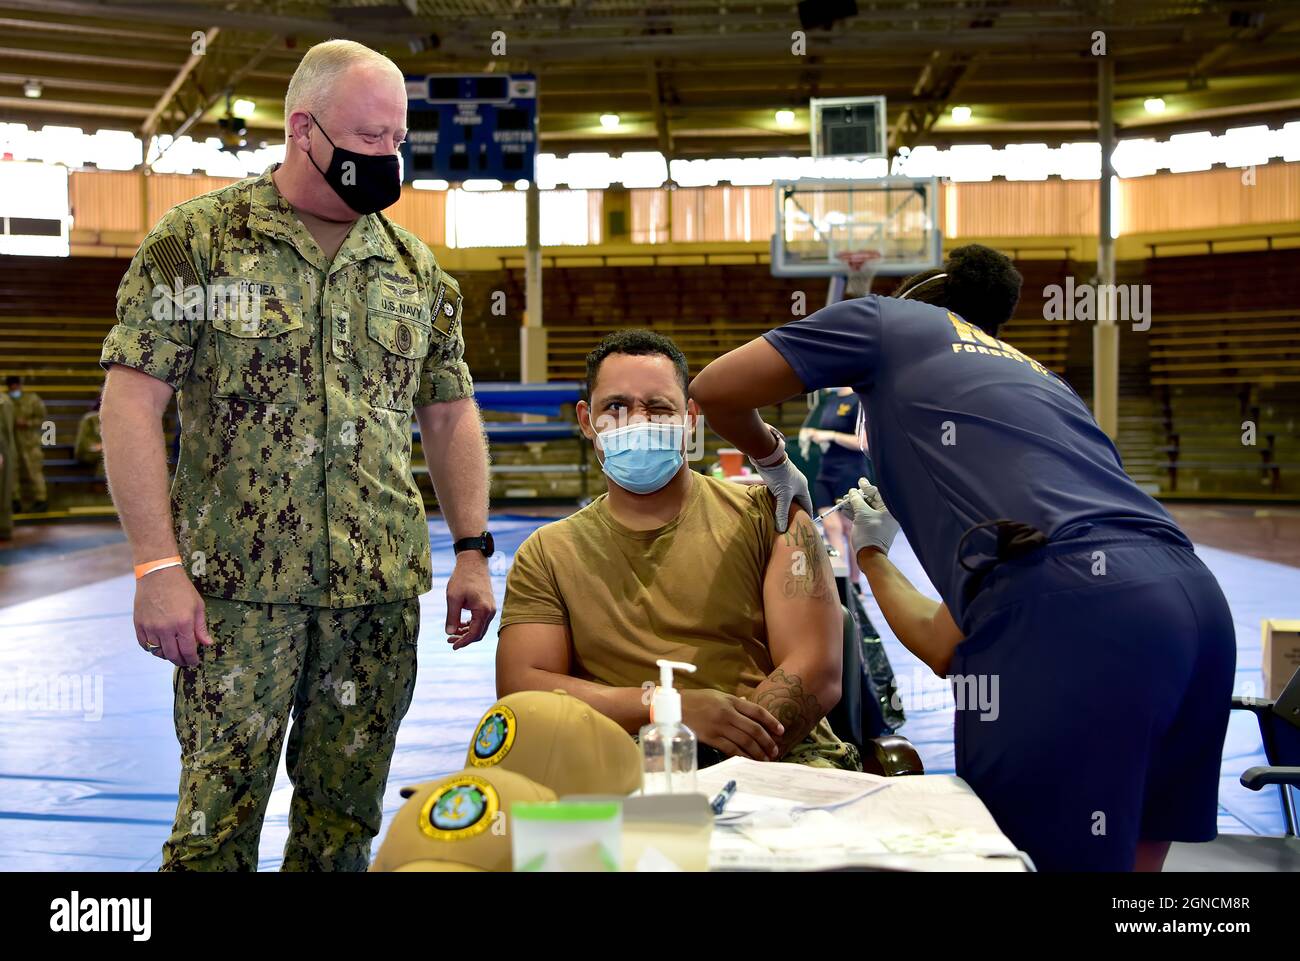 PEARL HARBOR, Hawaï (déc 29, 2020) Master-at-Arms 1re classe Patrick Moore reçoit le vaccin COVID-19 comme le chef de la flotte du Pacifique des États-Unis James Honea observe à la base conjointe Pearl Harbor-Hickam, le 29 décembre 2020. La clinique de santé navale d'Hawaii a été l'un des établissements choisis pour recevoir le vaccin dans le cadre d'une stratégie coordonnée et progressive, en donnant la priorité au vaccin pour le personnel admissible afin de protéger sa santé, sa famille et sa communauté. (É.-U. Photo de la Marine par Jay C. Pugh, spécialiste en communications de masse, 201229-N-YU572-0086 Banque D'Images